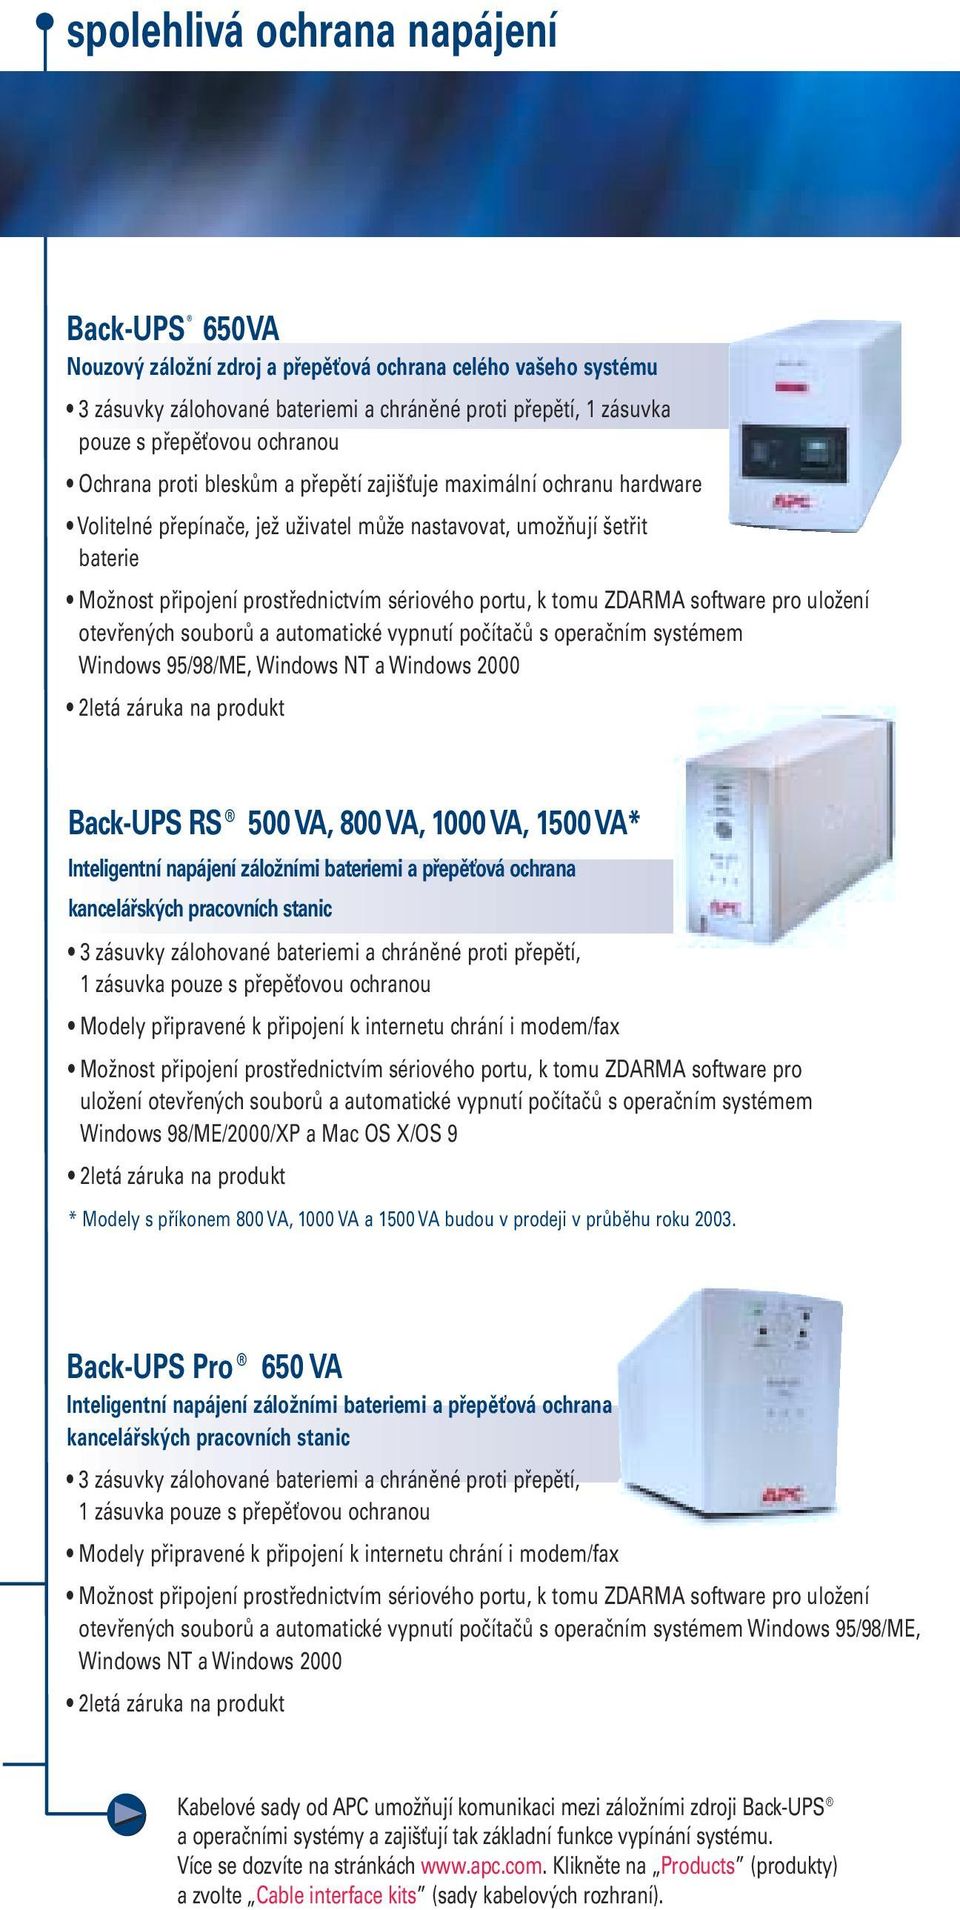 portu, k tomu ZDARMA software pro uložení otevřených souborů a automatické vypnutí počítačů s operačním systémem Windows 95/98/ME, Windows NT a Windows 2000 2letá záruka na produkt Back-UPS RS 500